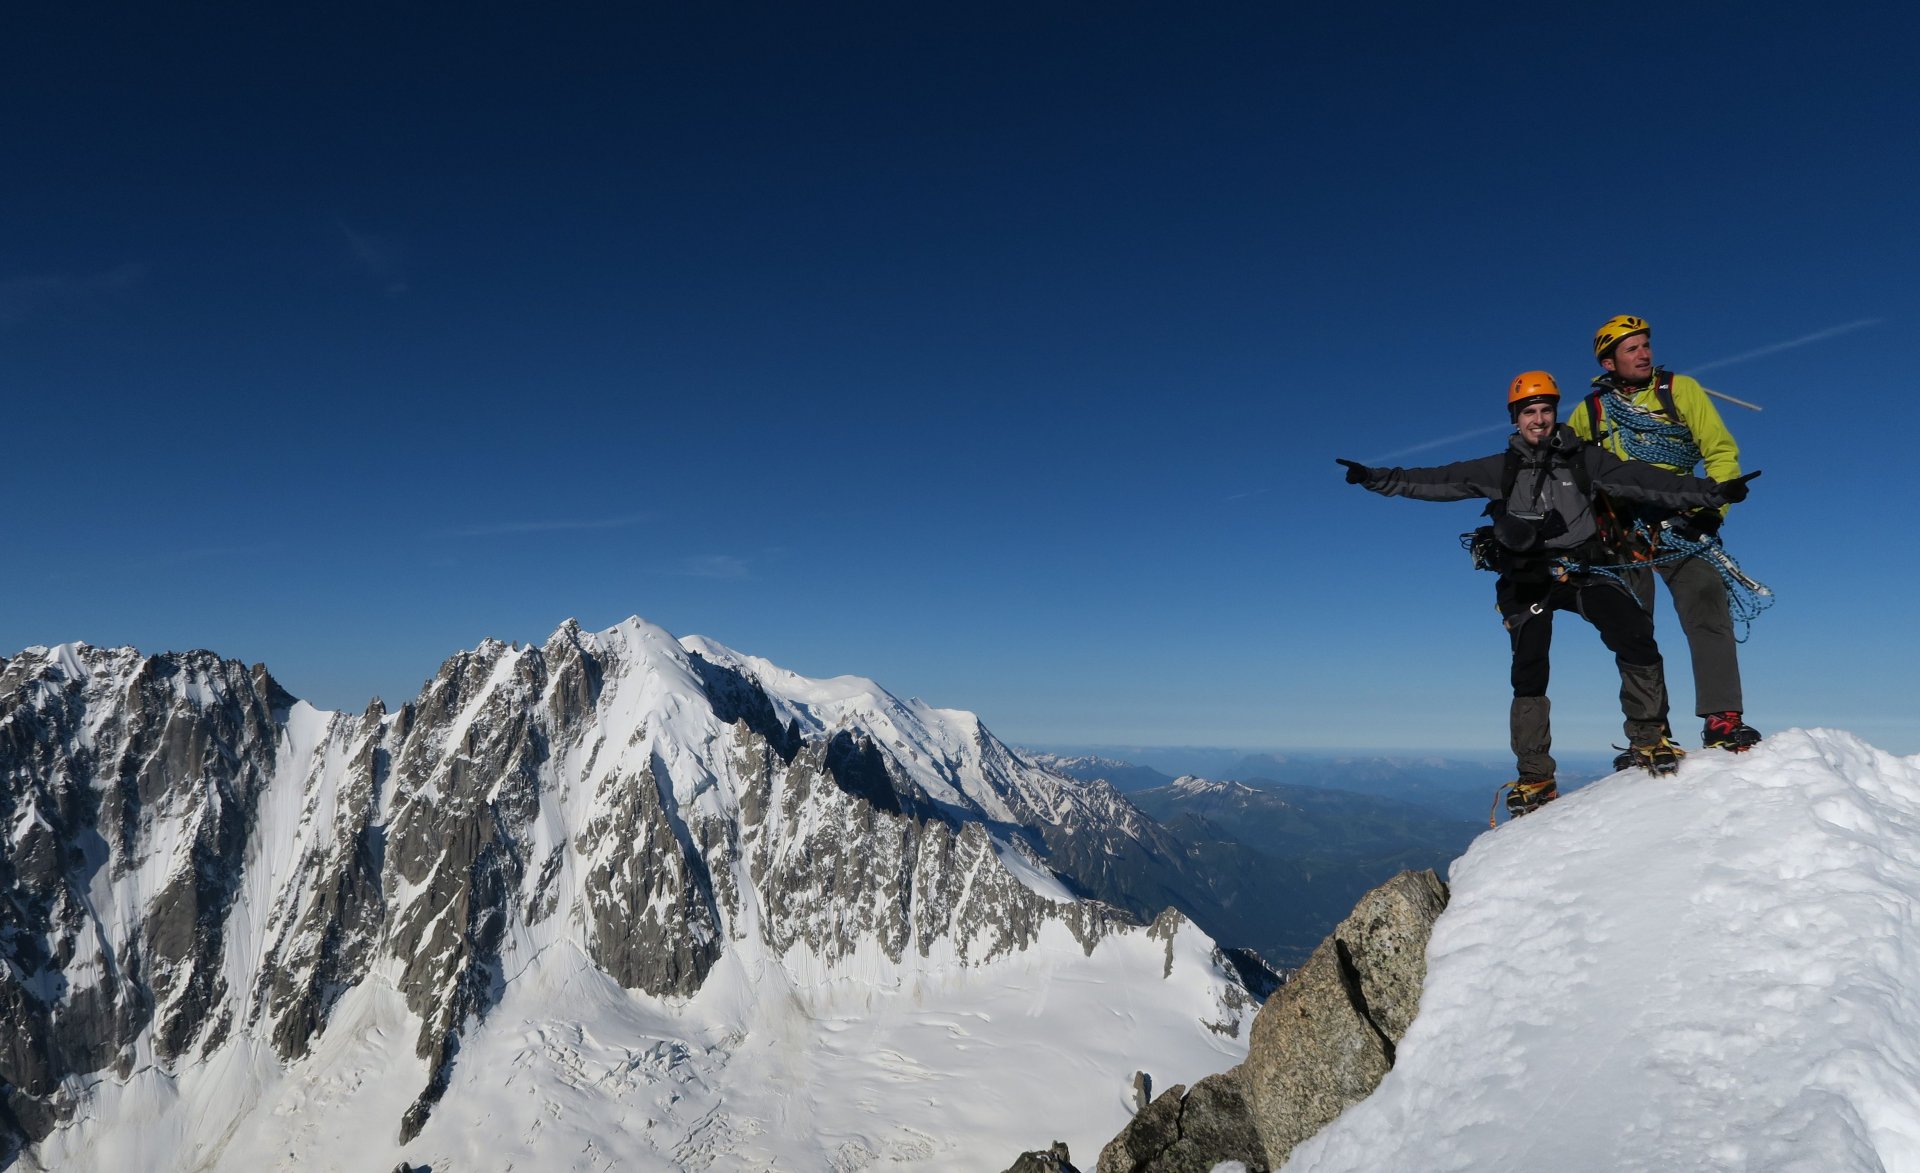 Piolets d'alpinisme - Fiche pratique - Le Parisien